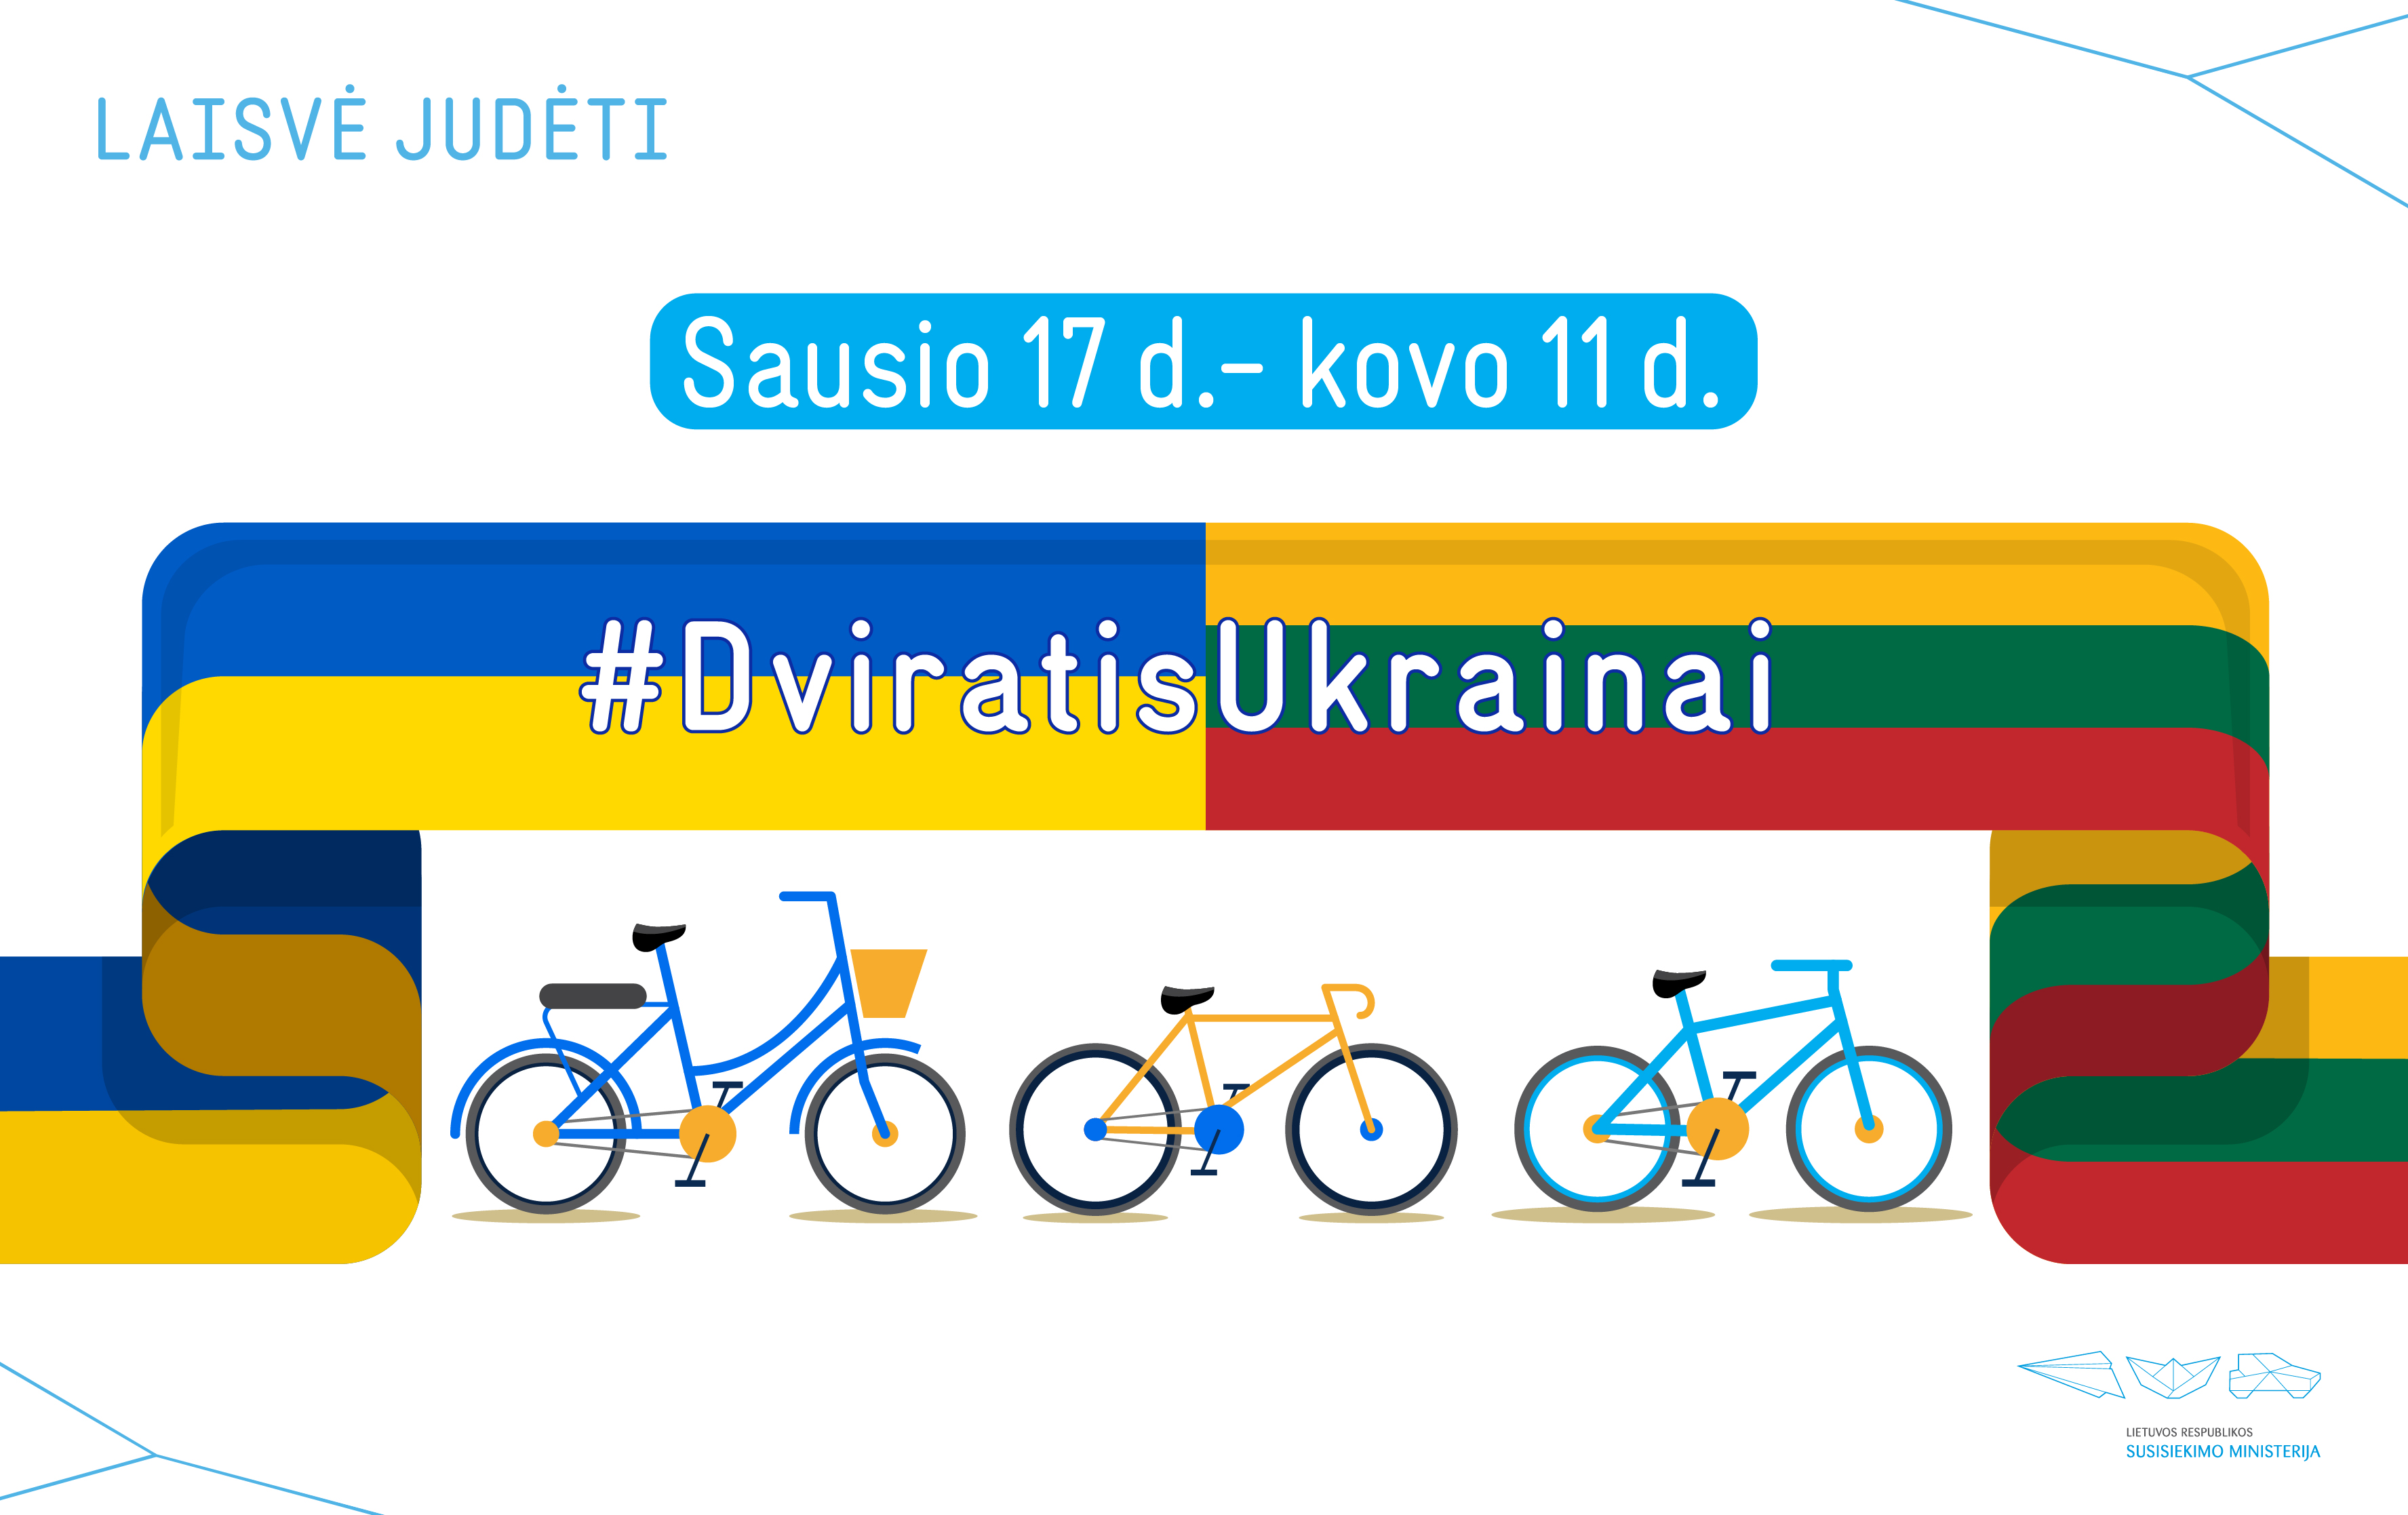 #DviratisUkrainai: Susisiekimo ministerija kviečia dovanoti dviračius ukrainiečiams